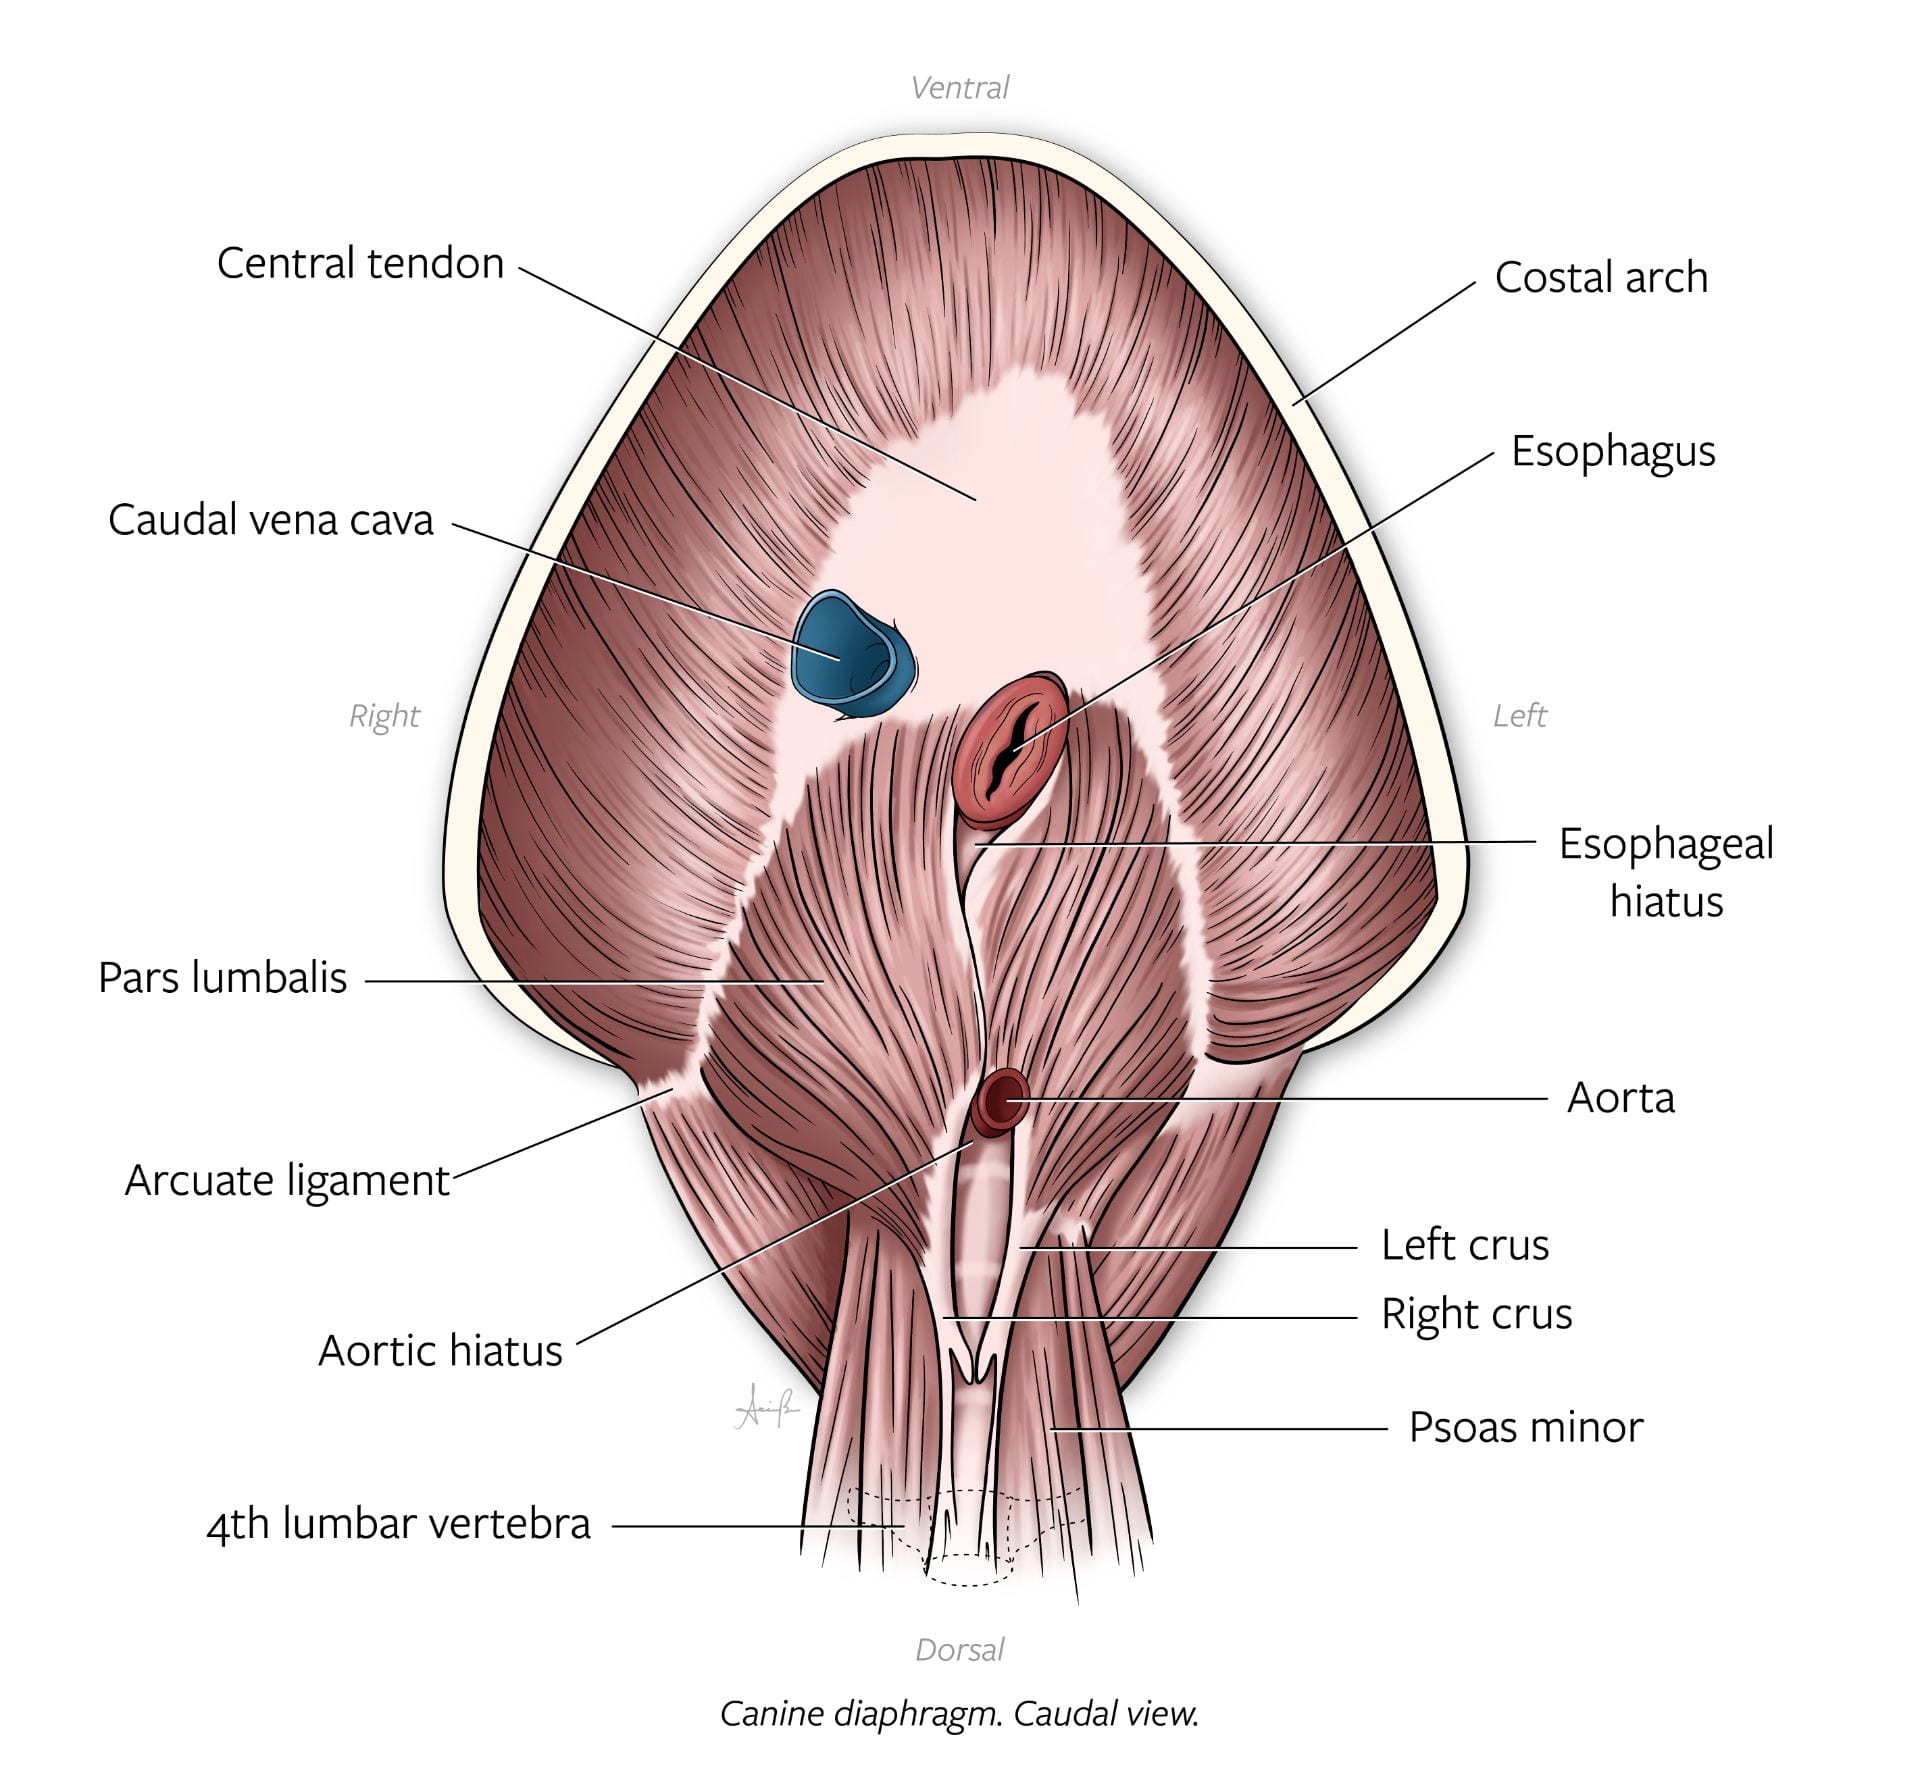 Diaphragm Caudal View Diagram